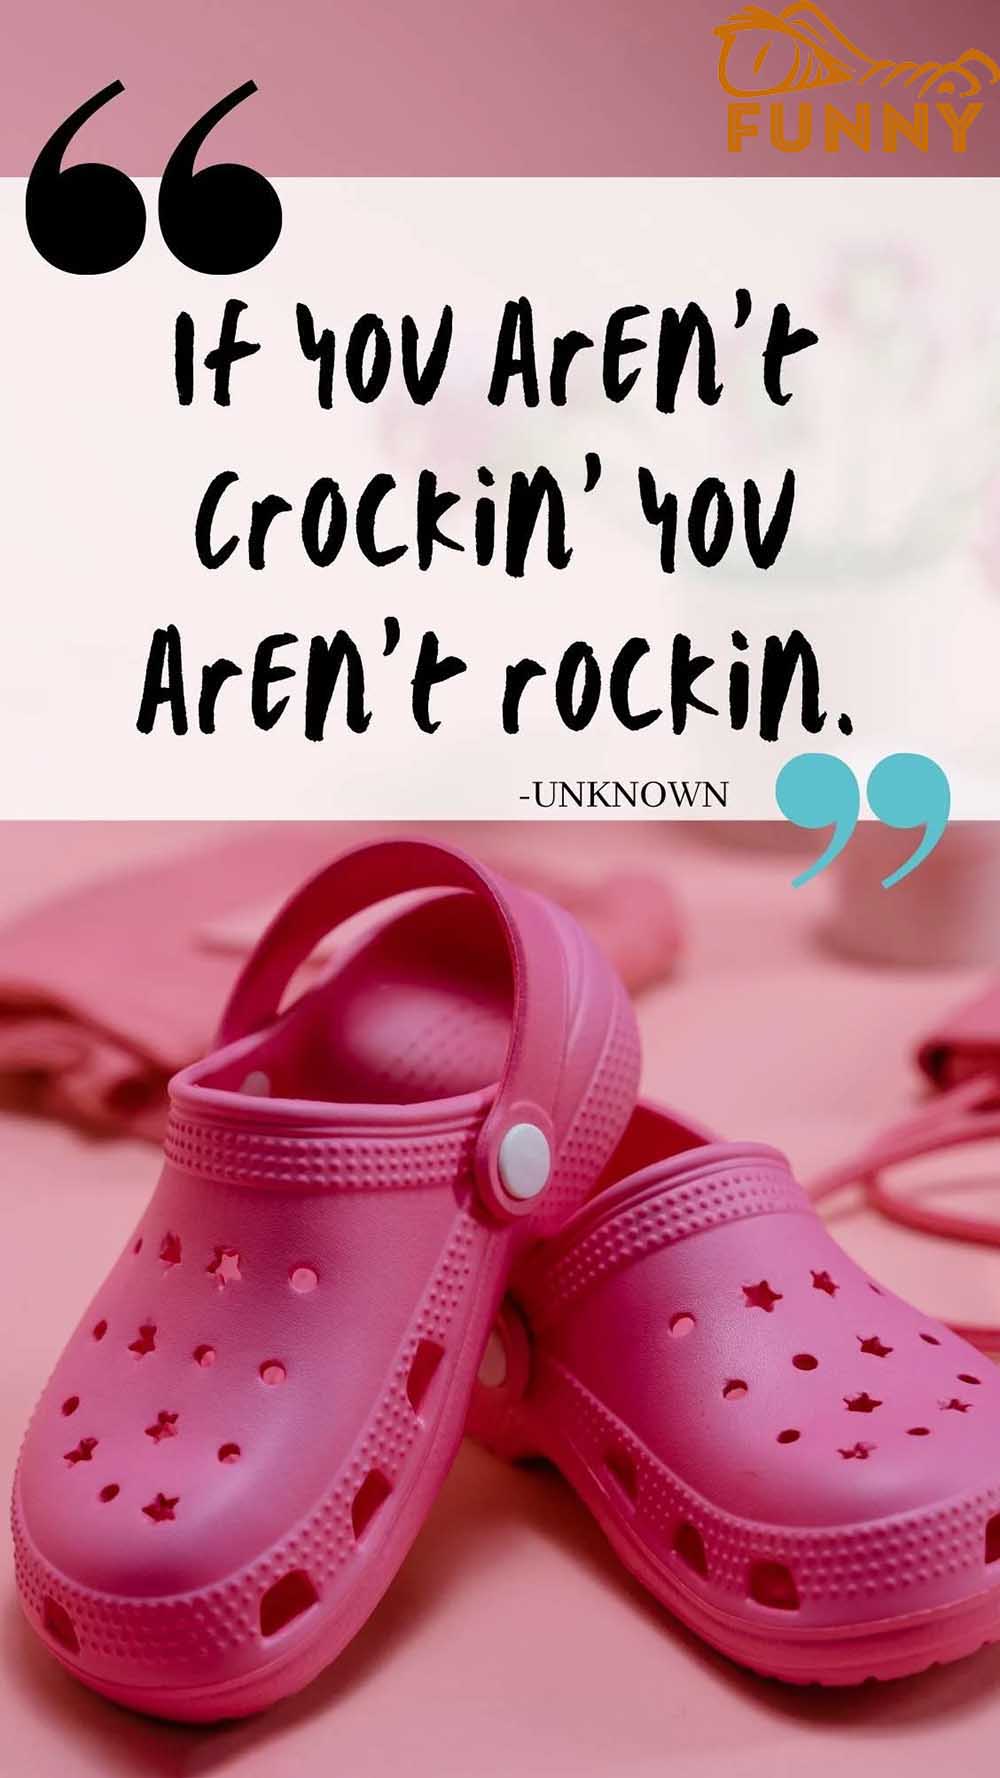 If you arent Crockin you arent rockin